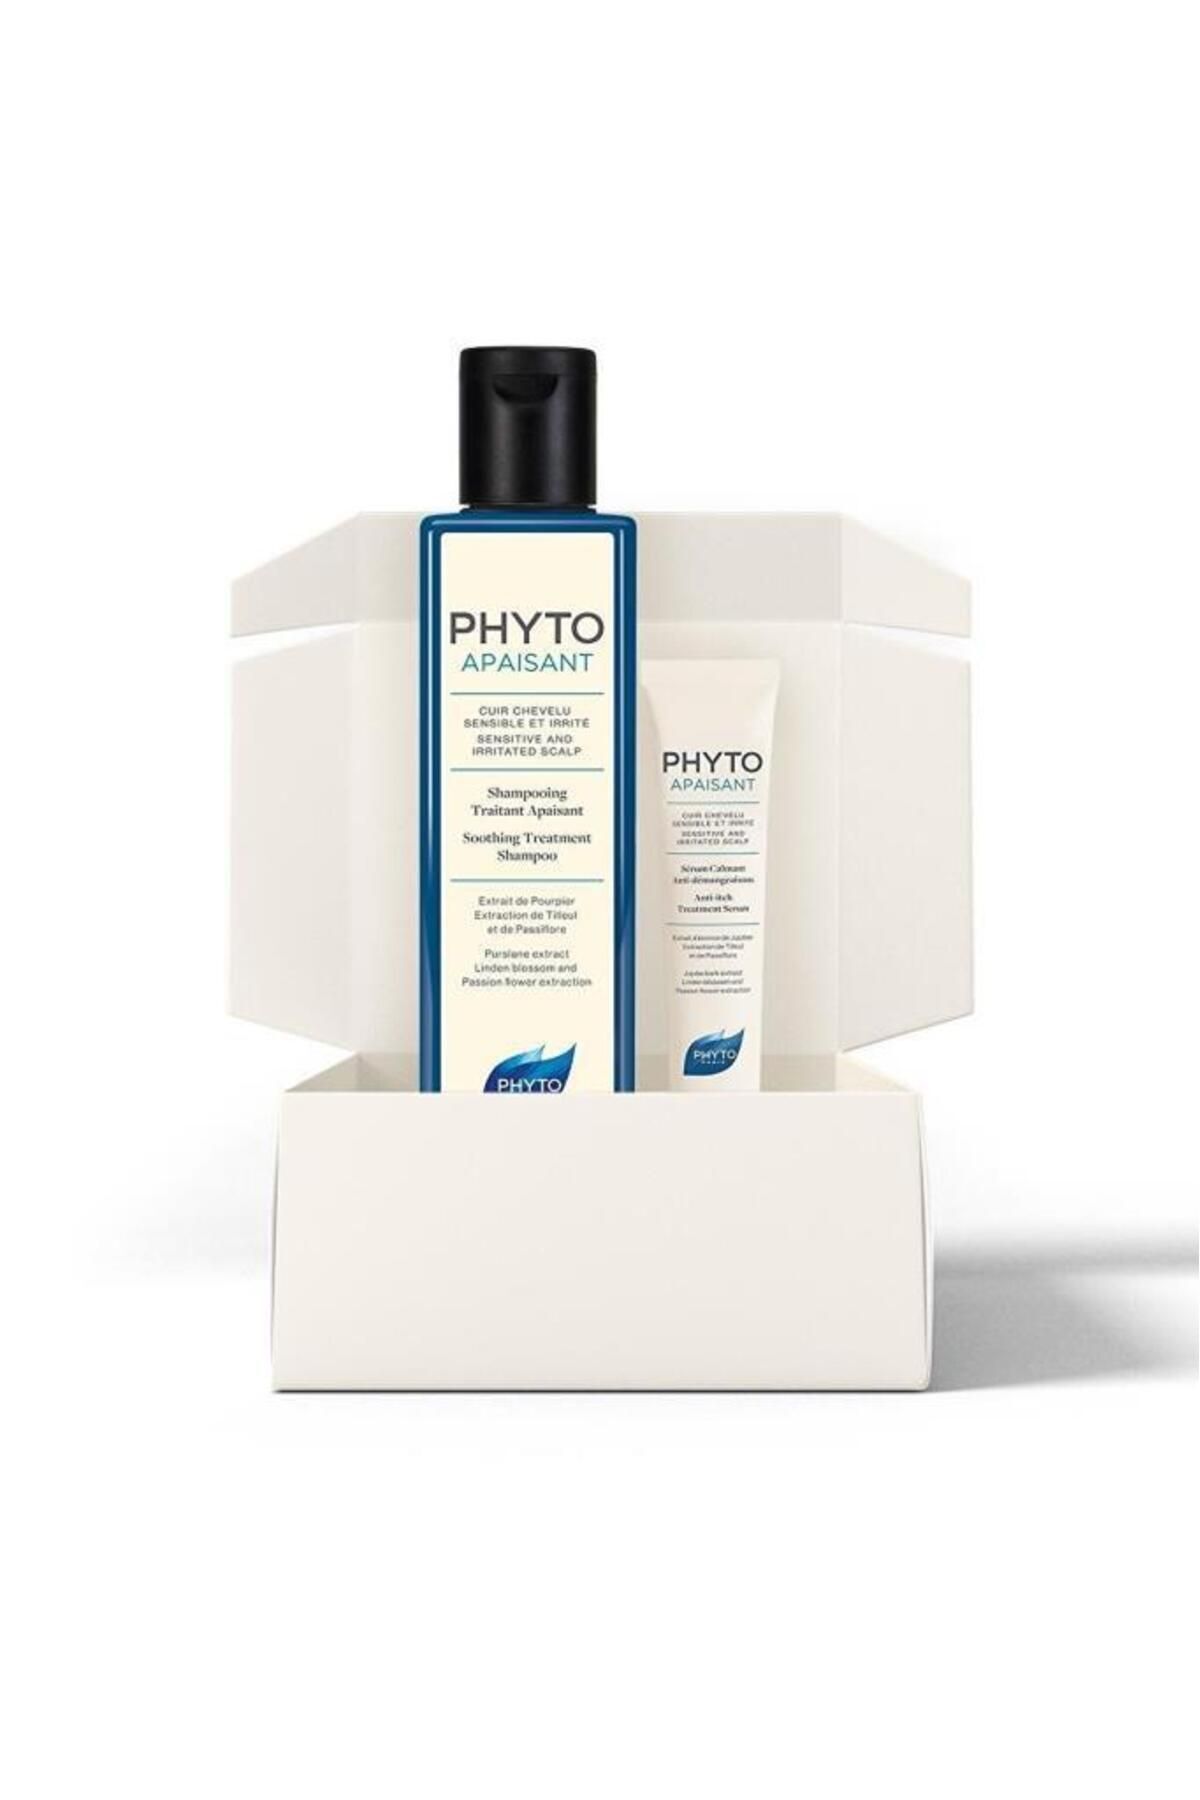 Phyto Apaısant Shampoo 250 Ml - Şampuan Ve Bakım Serumu Özel Fiyat